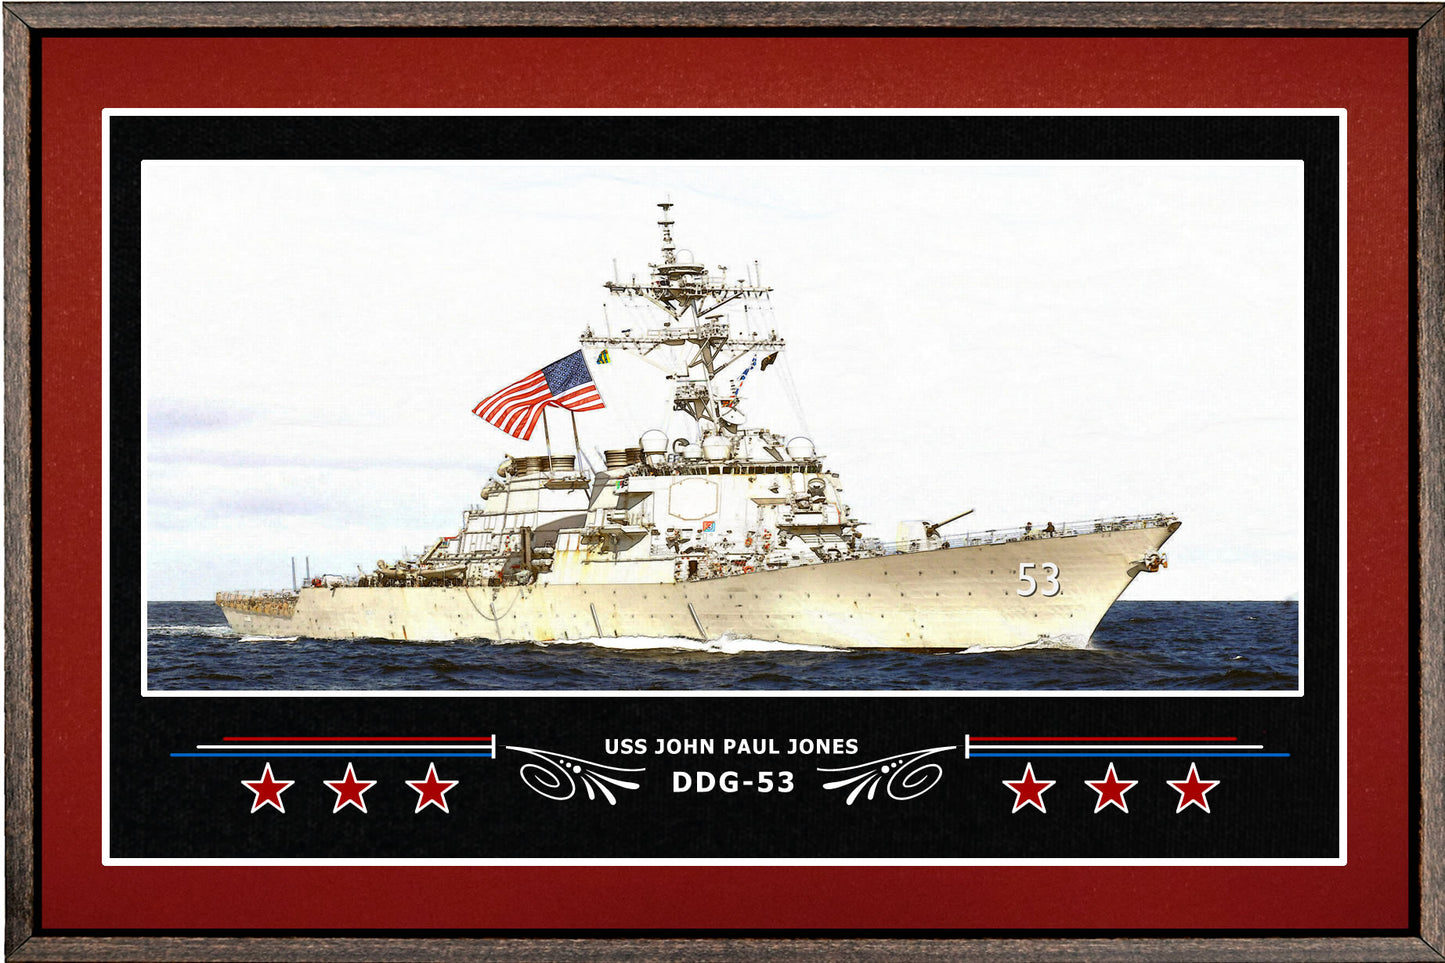 USS JOHN PAUL JONES DDG 53 BOX FRAMED CANVAS ART BURGUNDY